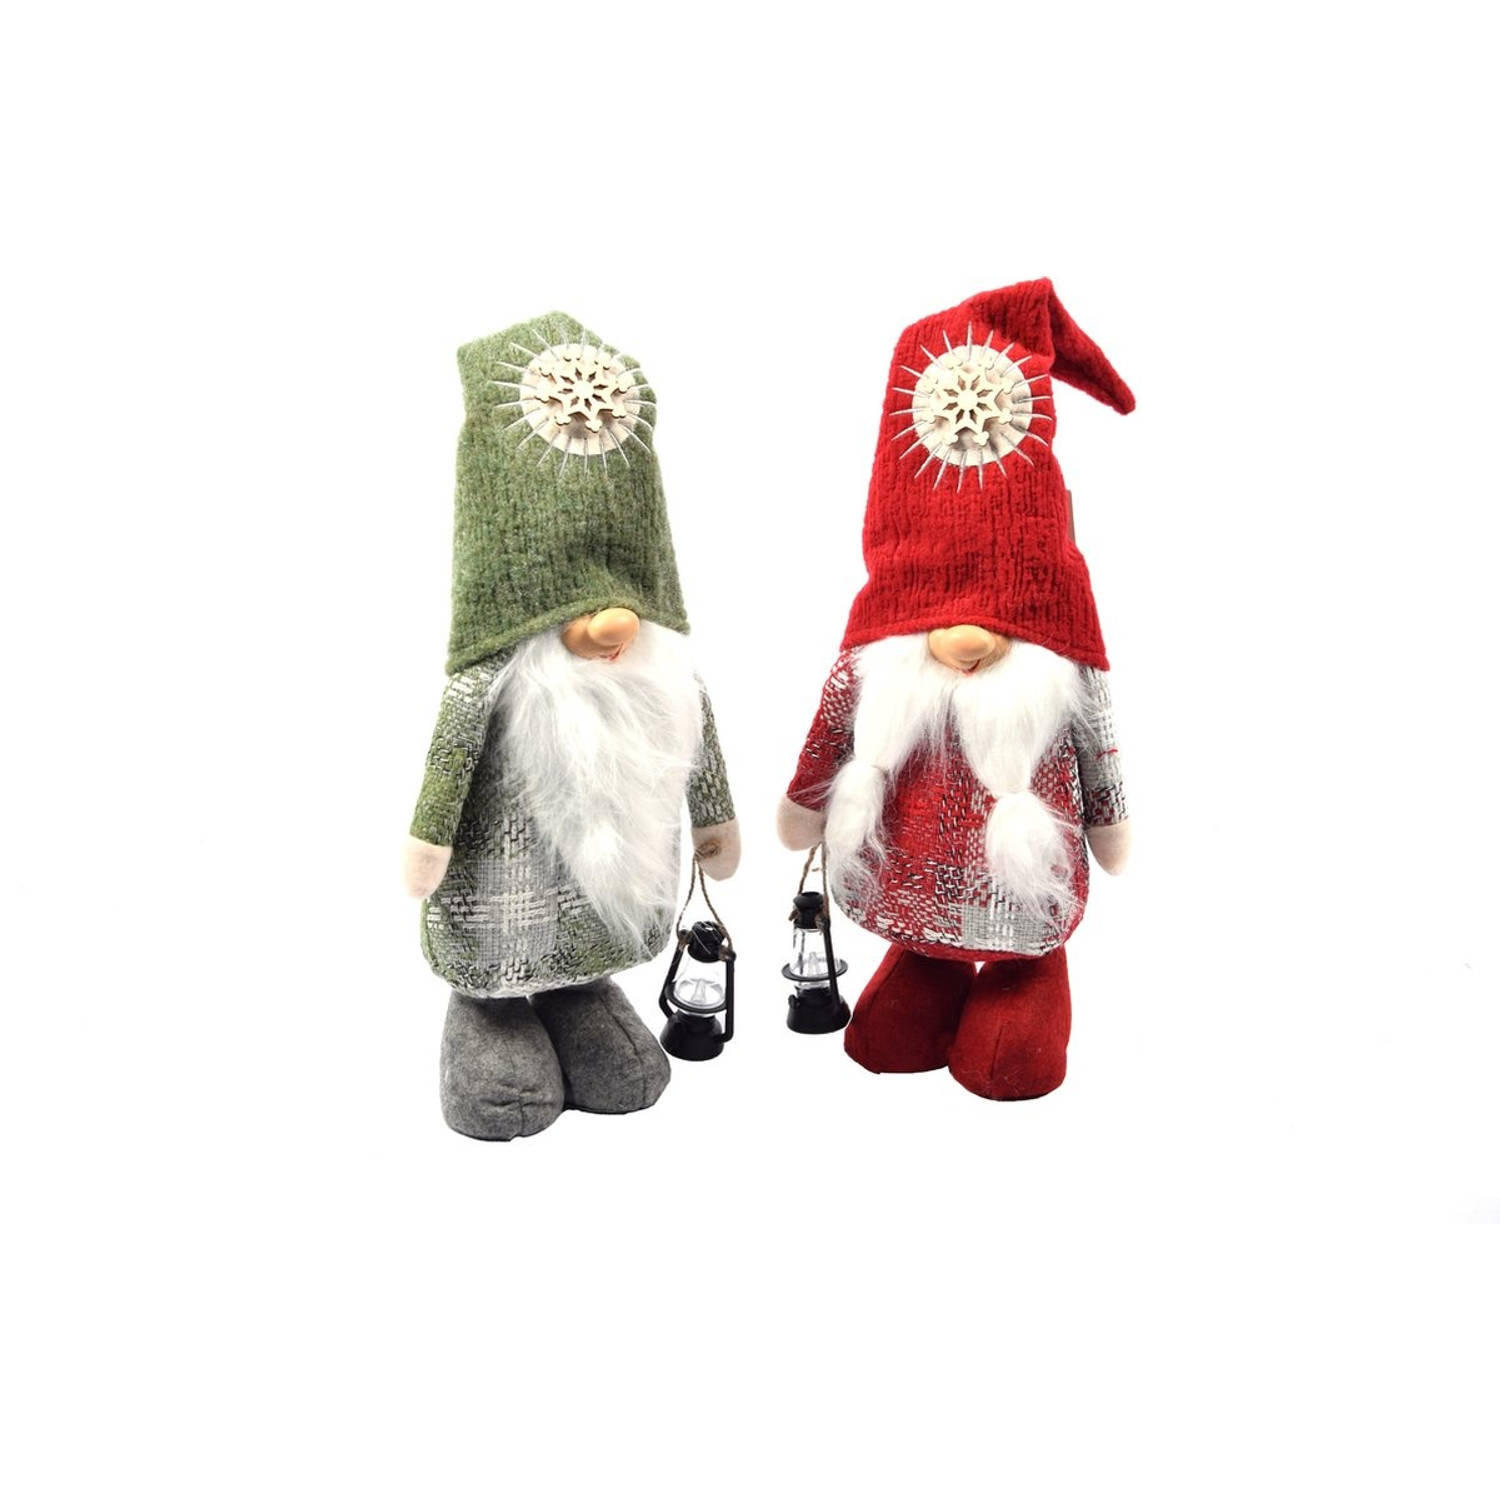 Set van 2 stuks| Gnome Staand |50cm|Rood/Groen |Kerst Kabouter Puntmuts| Gevuld met pluche | kerstversiering| Kerstman/gnome man baard| pop